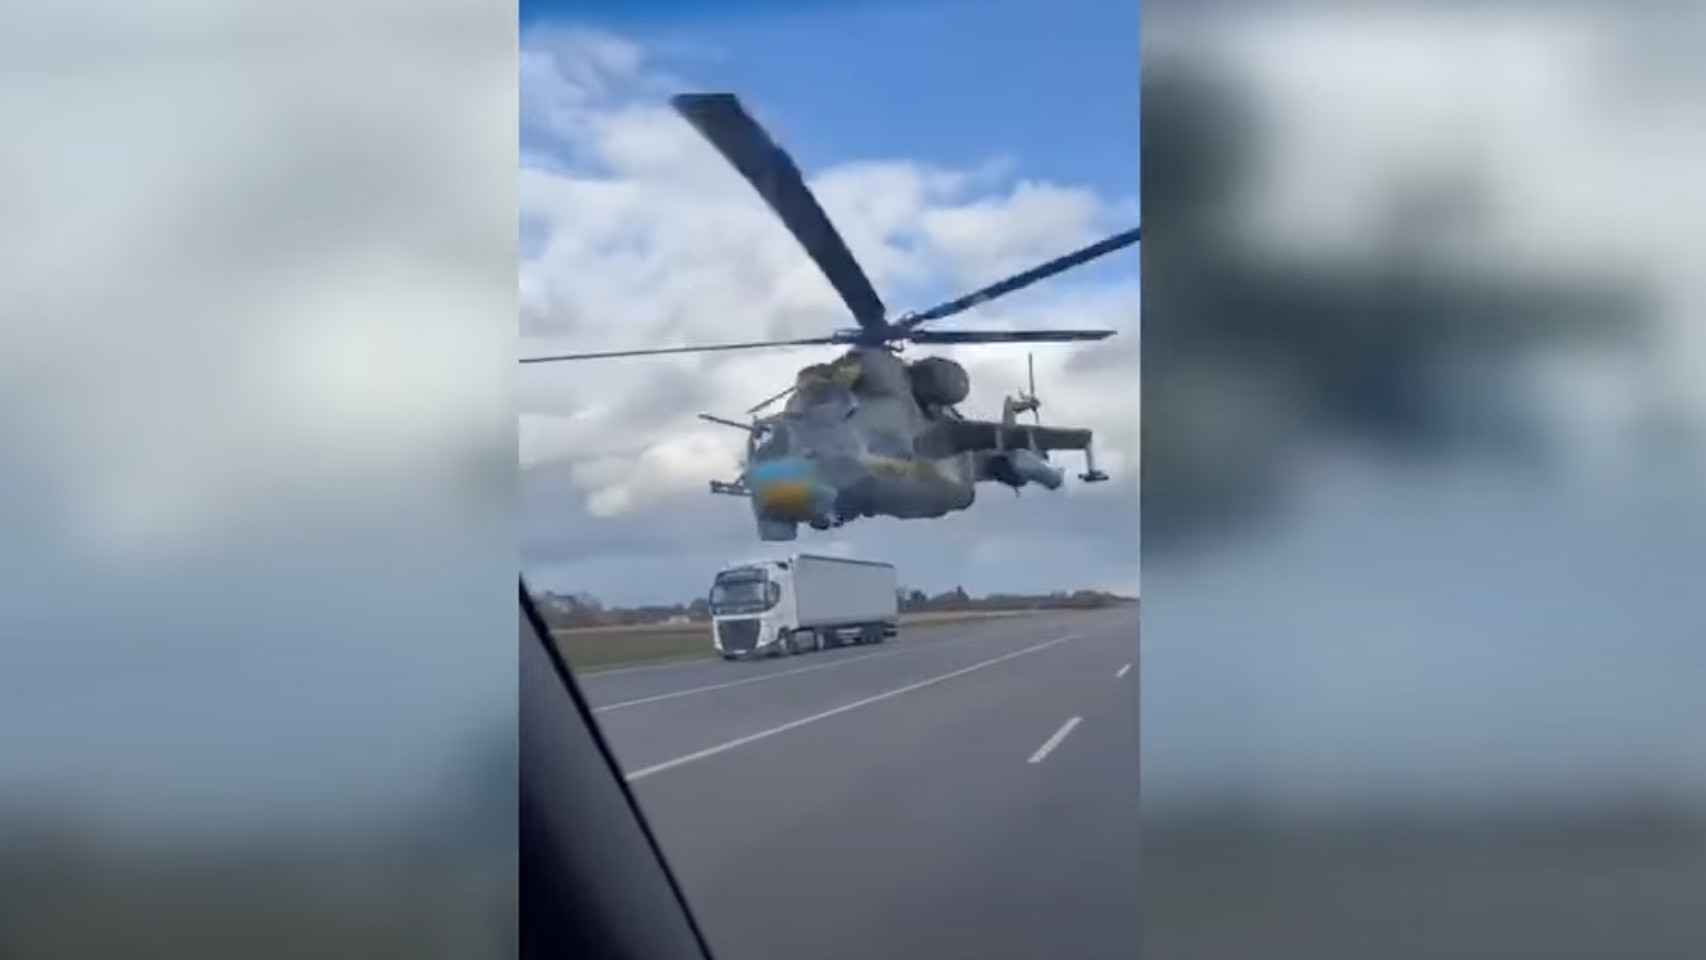 Captura del vídeo del helicóptero Mi-24 recorriendo la carretera.